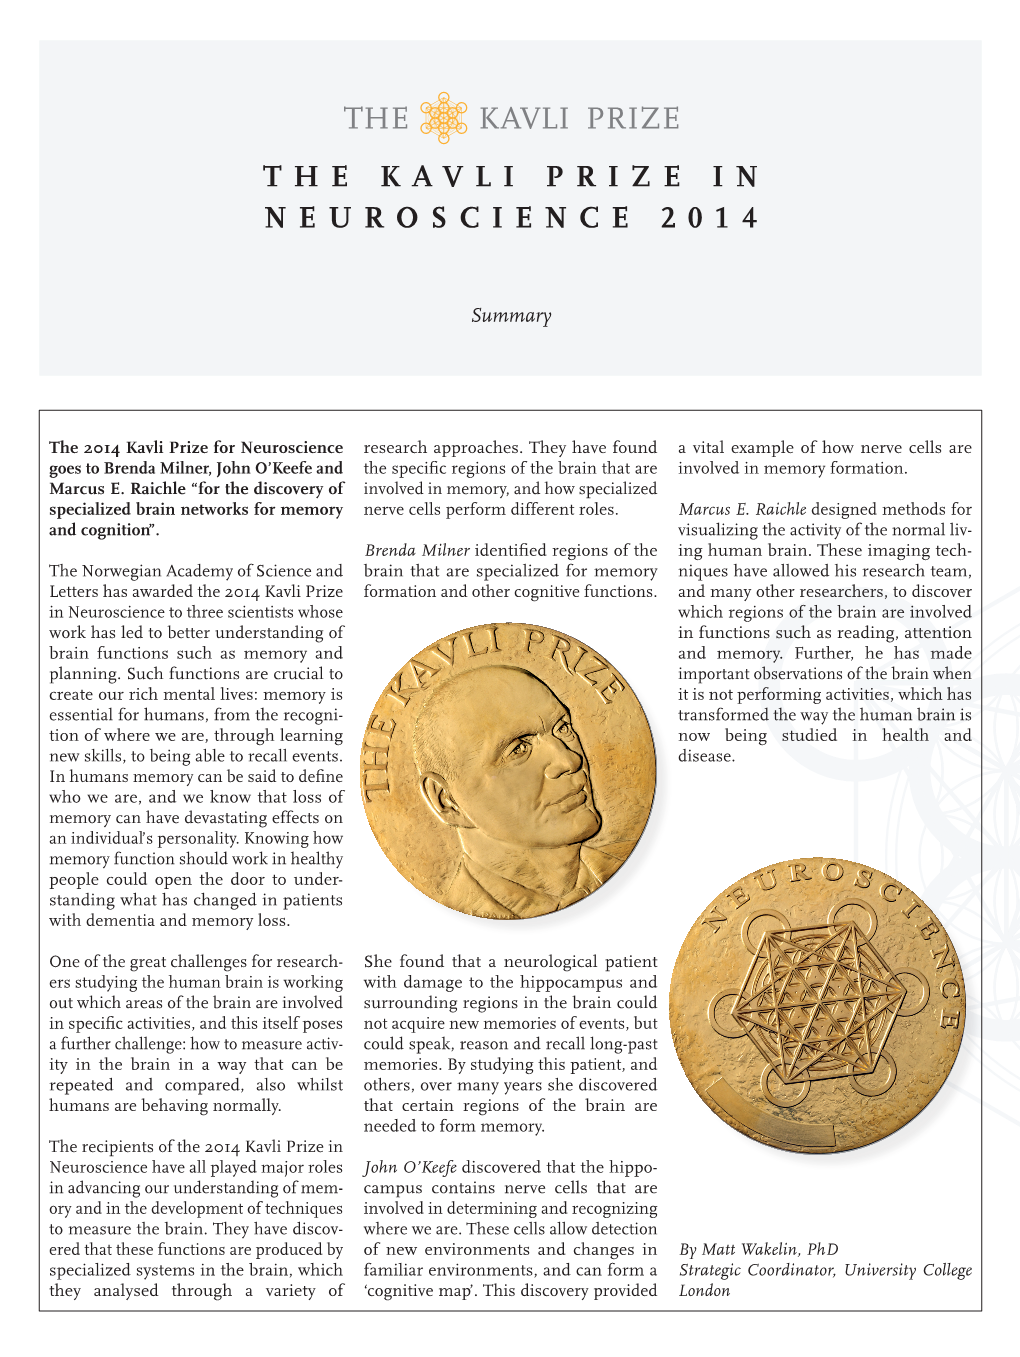 The Kavli Prize in Neuroscience 2014